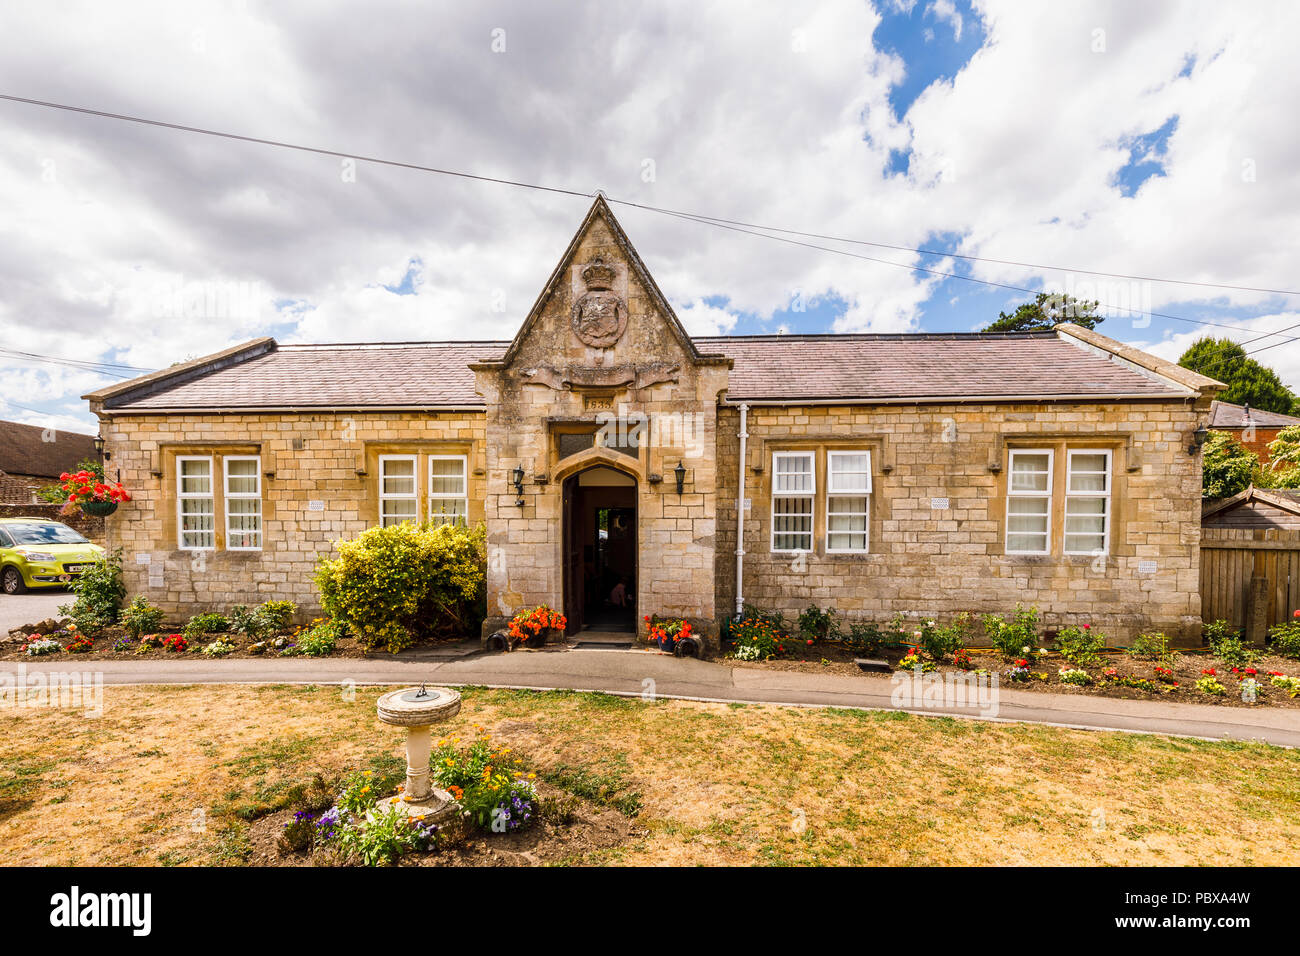 La vecchia scuola datata 1835, un edificio storico ora un presidio medico, grande Bedwyn, un villaggio rurale nel Wiltshire, Inghilterra del sud in estate Foto Stock